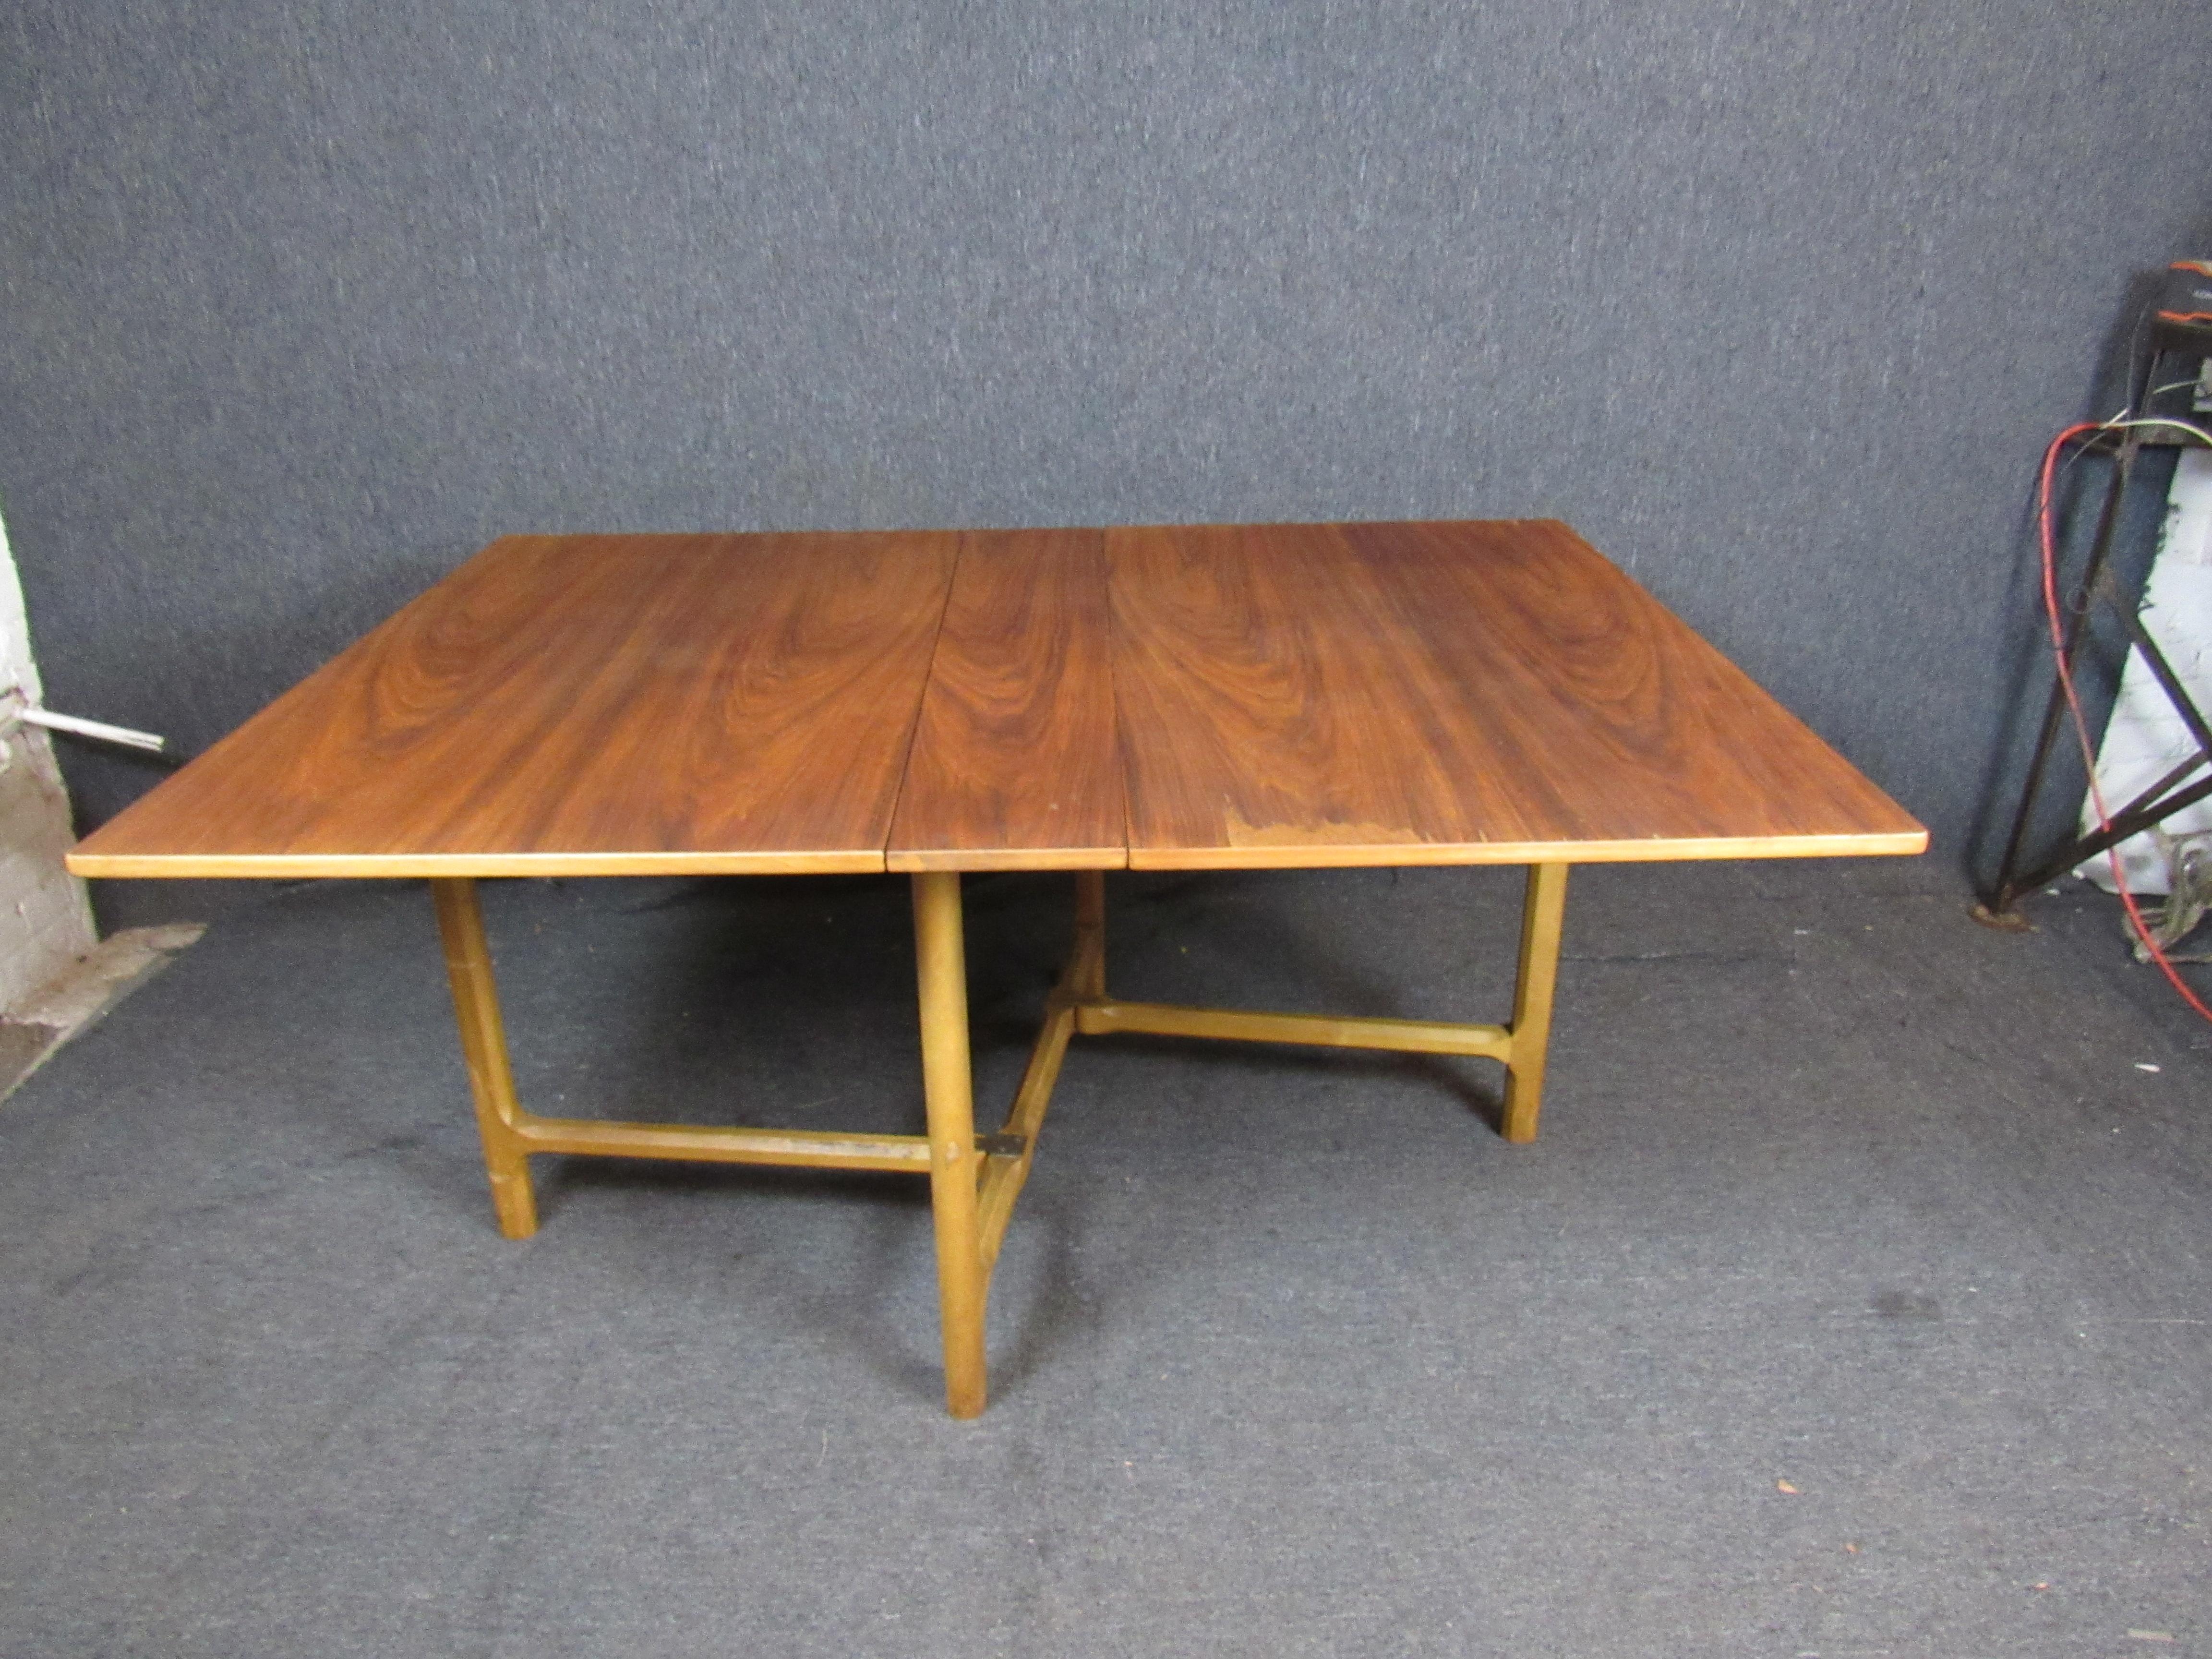 Wunderschöner Vintage-Tisch aus Ahorn mit geschnitzten Beinen. Mit einer oder zwei Platten lässt sich die Tischplatte von kompakten 44 